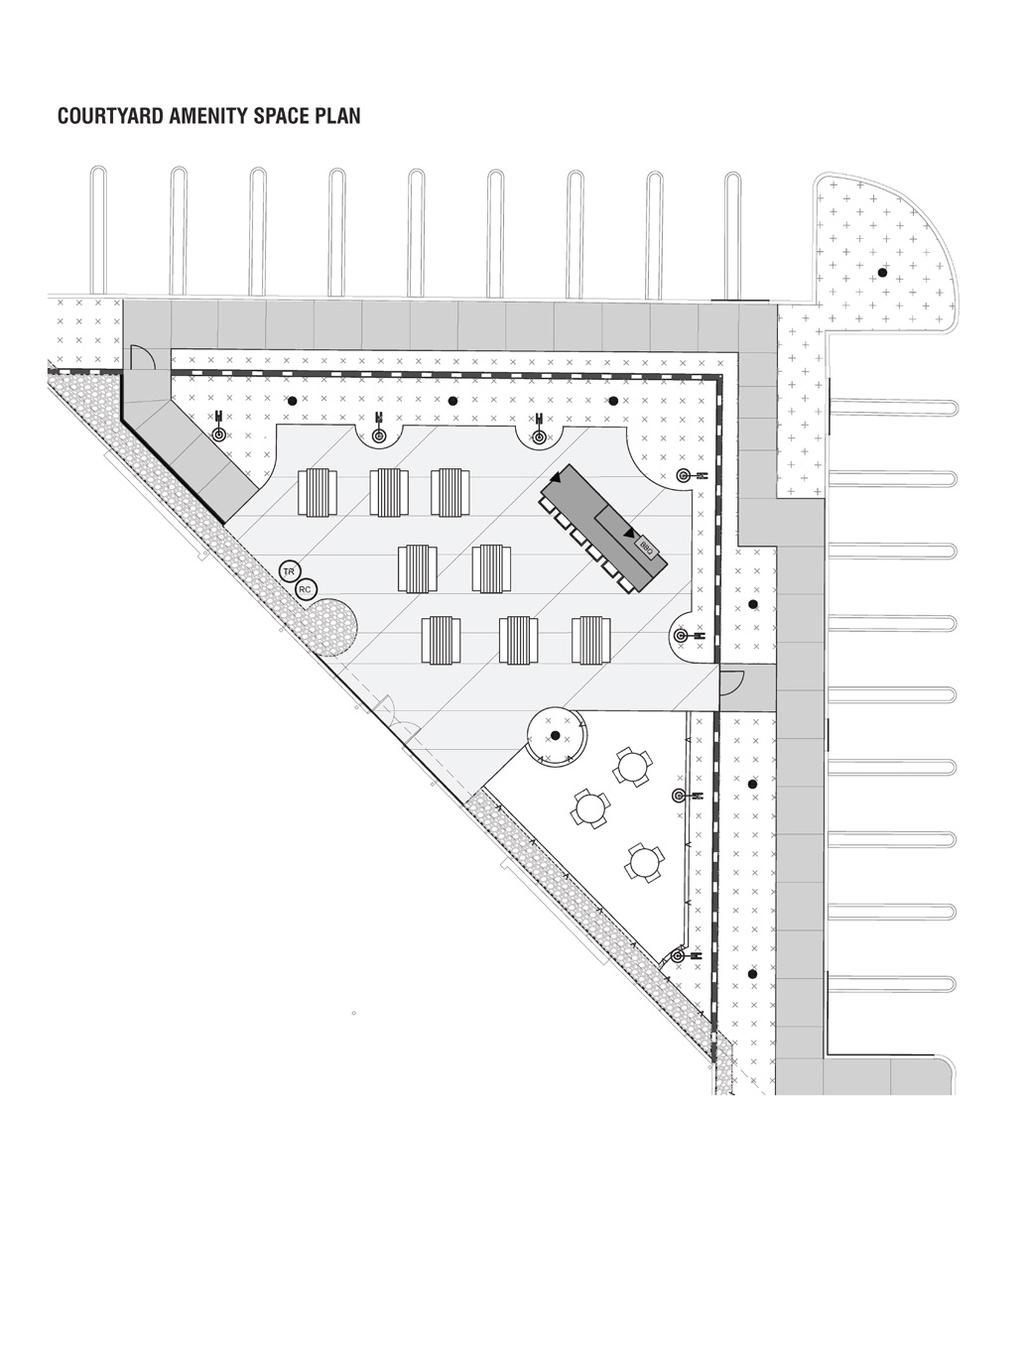 Floor Plans ±51,758 SF 1st Floor Hypothetical Plan / New Outdoor